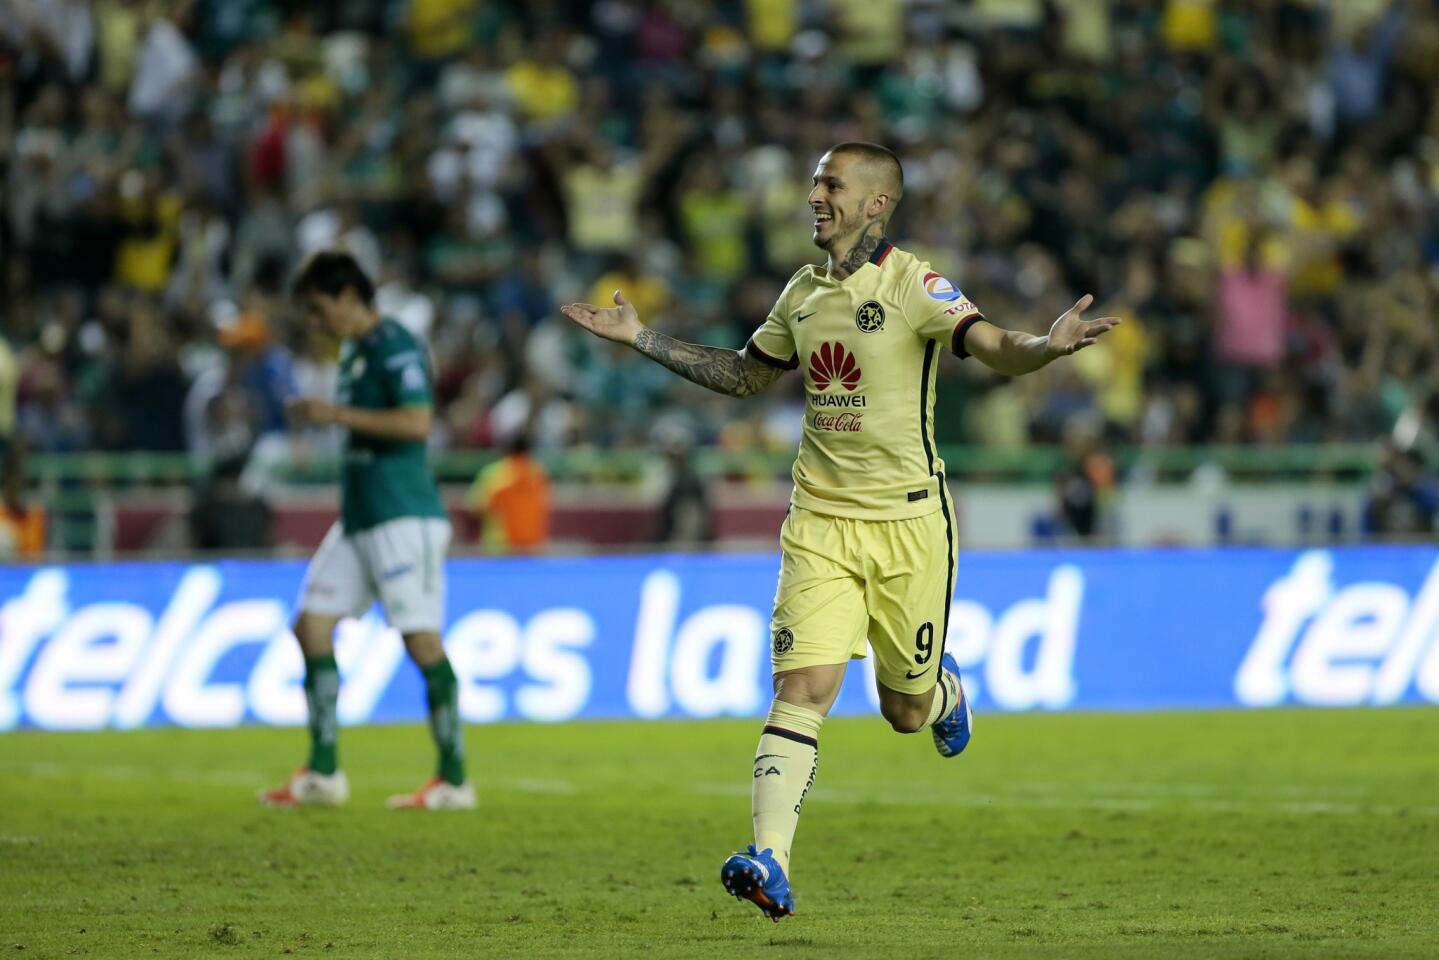 El jugador de América Darío Benedetto celebra una anotación ante León, durante el partido de vuelta de cuartos de final del Torneo Apertura del futbol mexicano realizado en el estadio Nou Camp, en la ciudad de León (México).